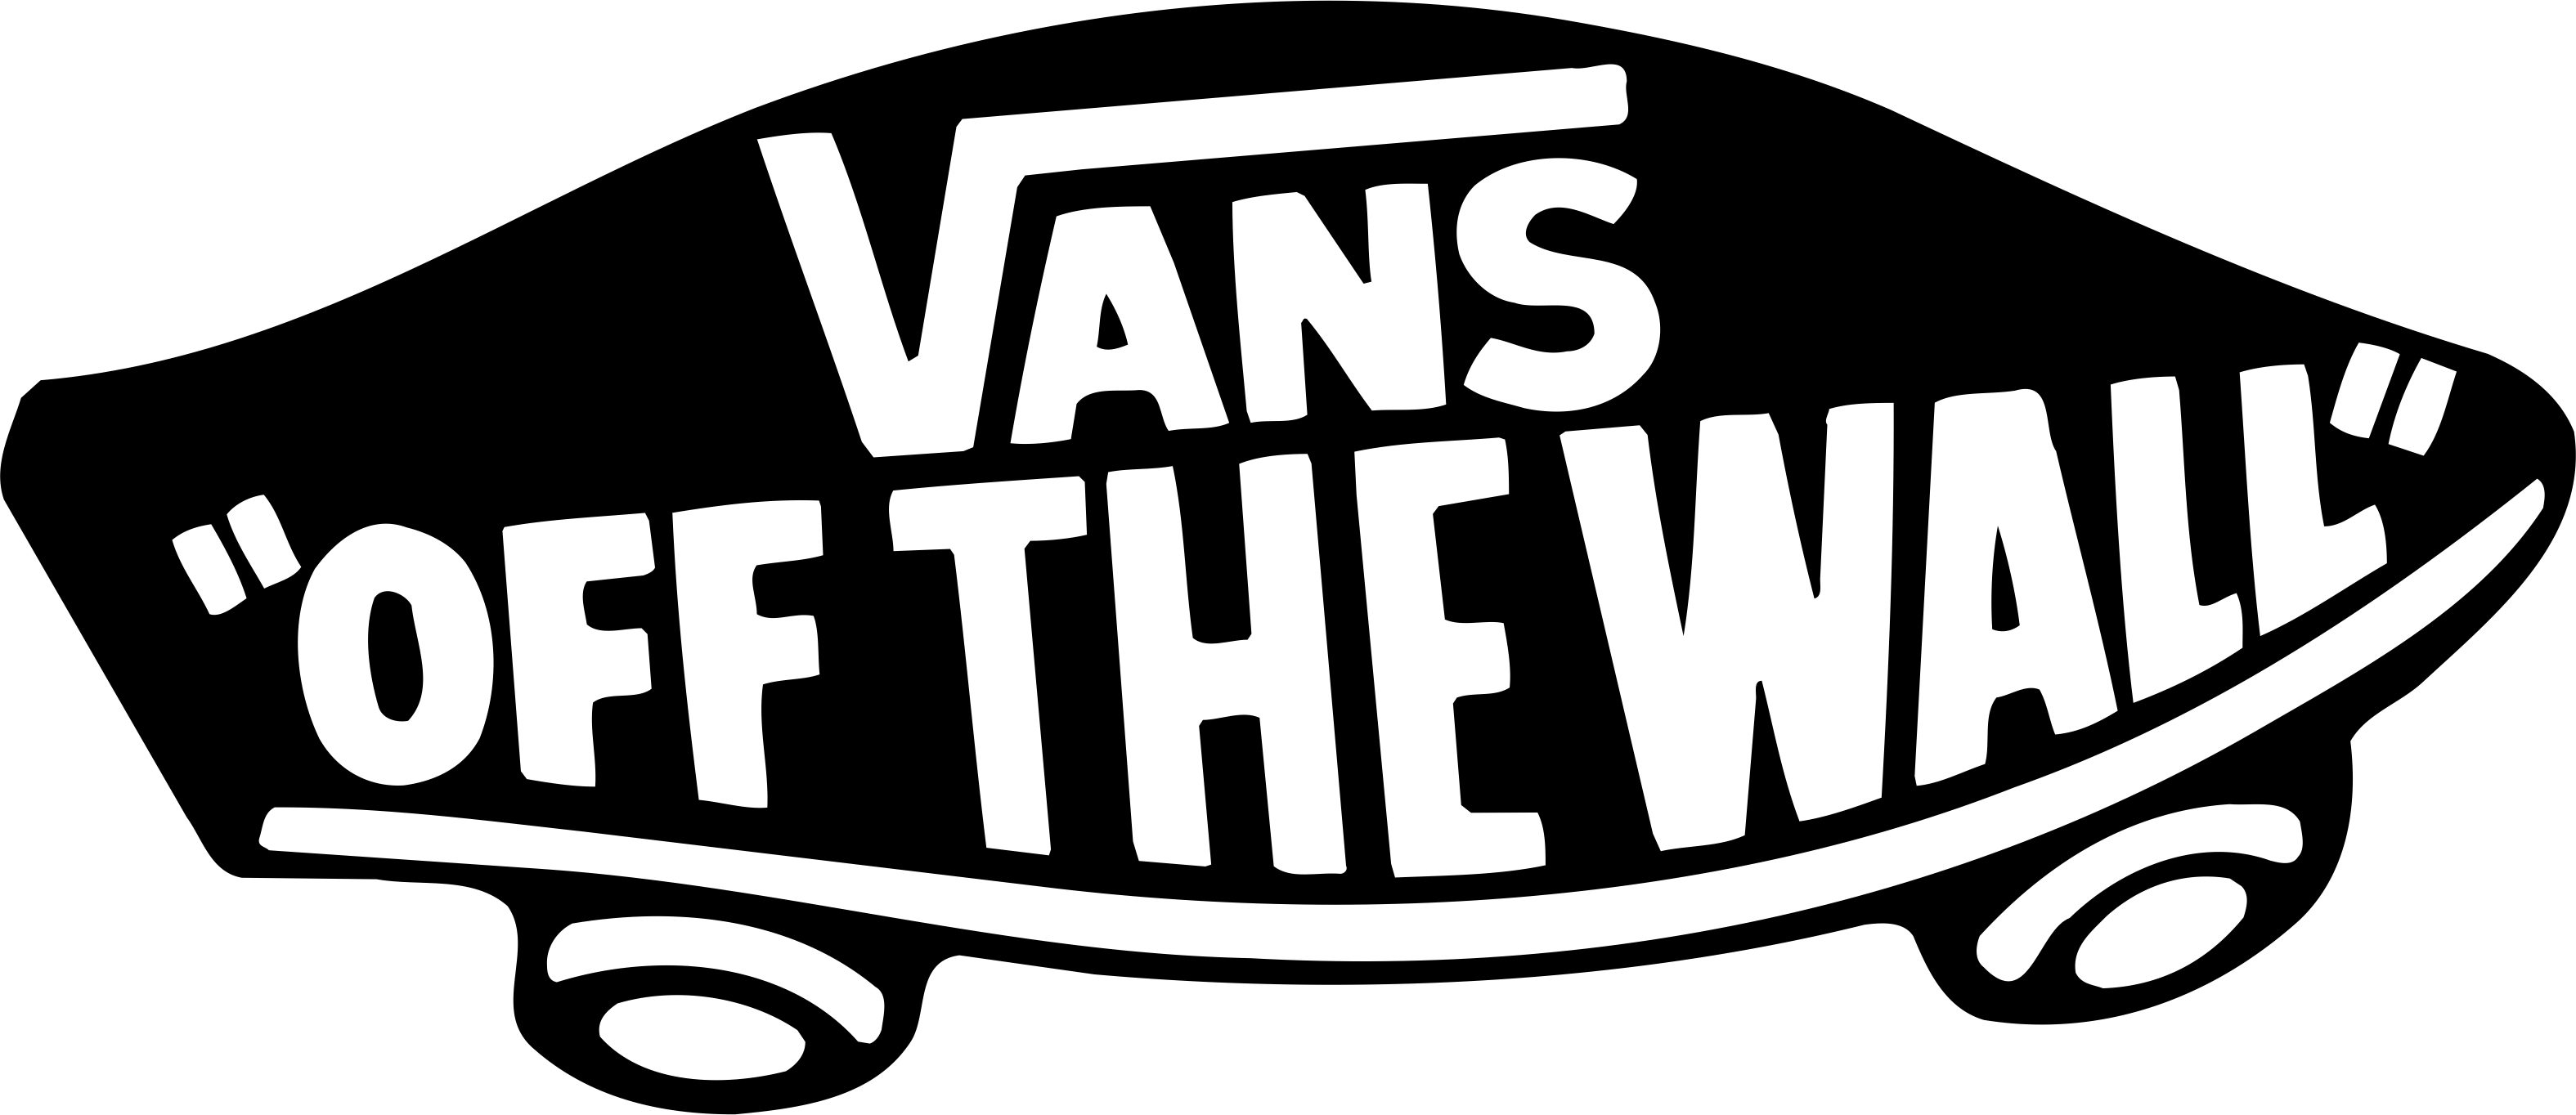 Cool Vans Logo - Vans - Brands